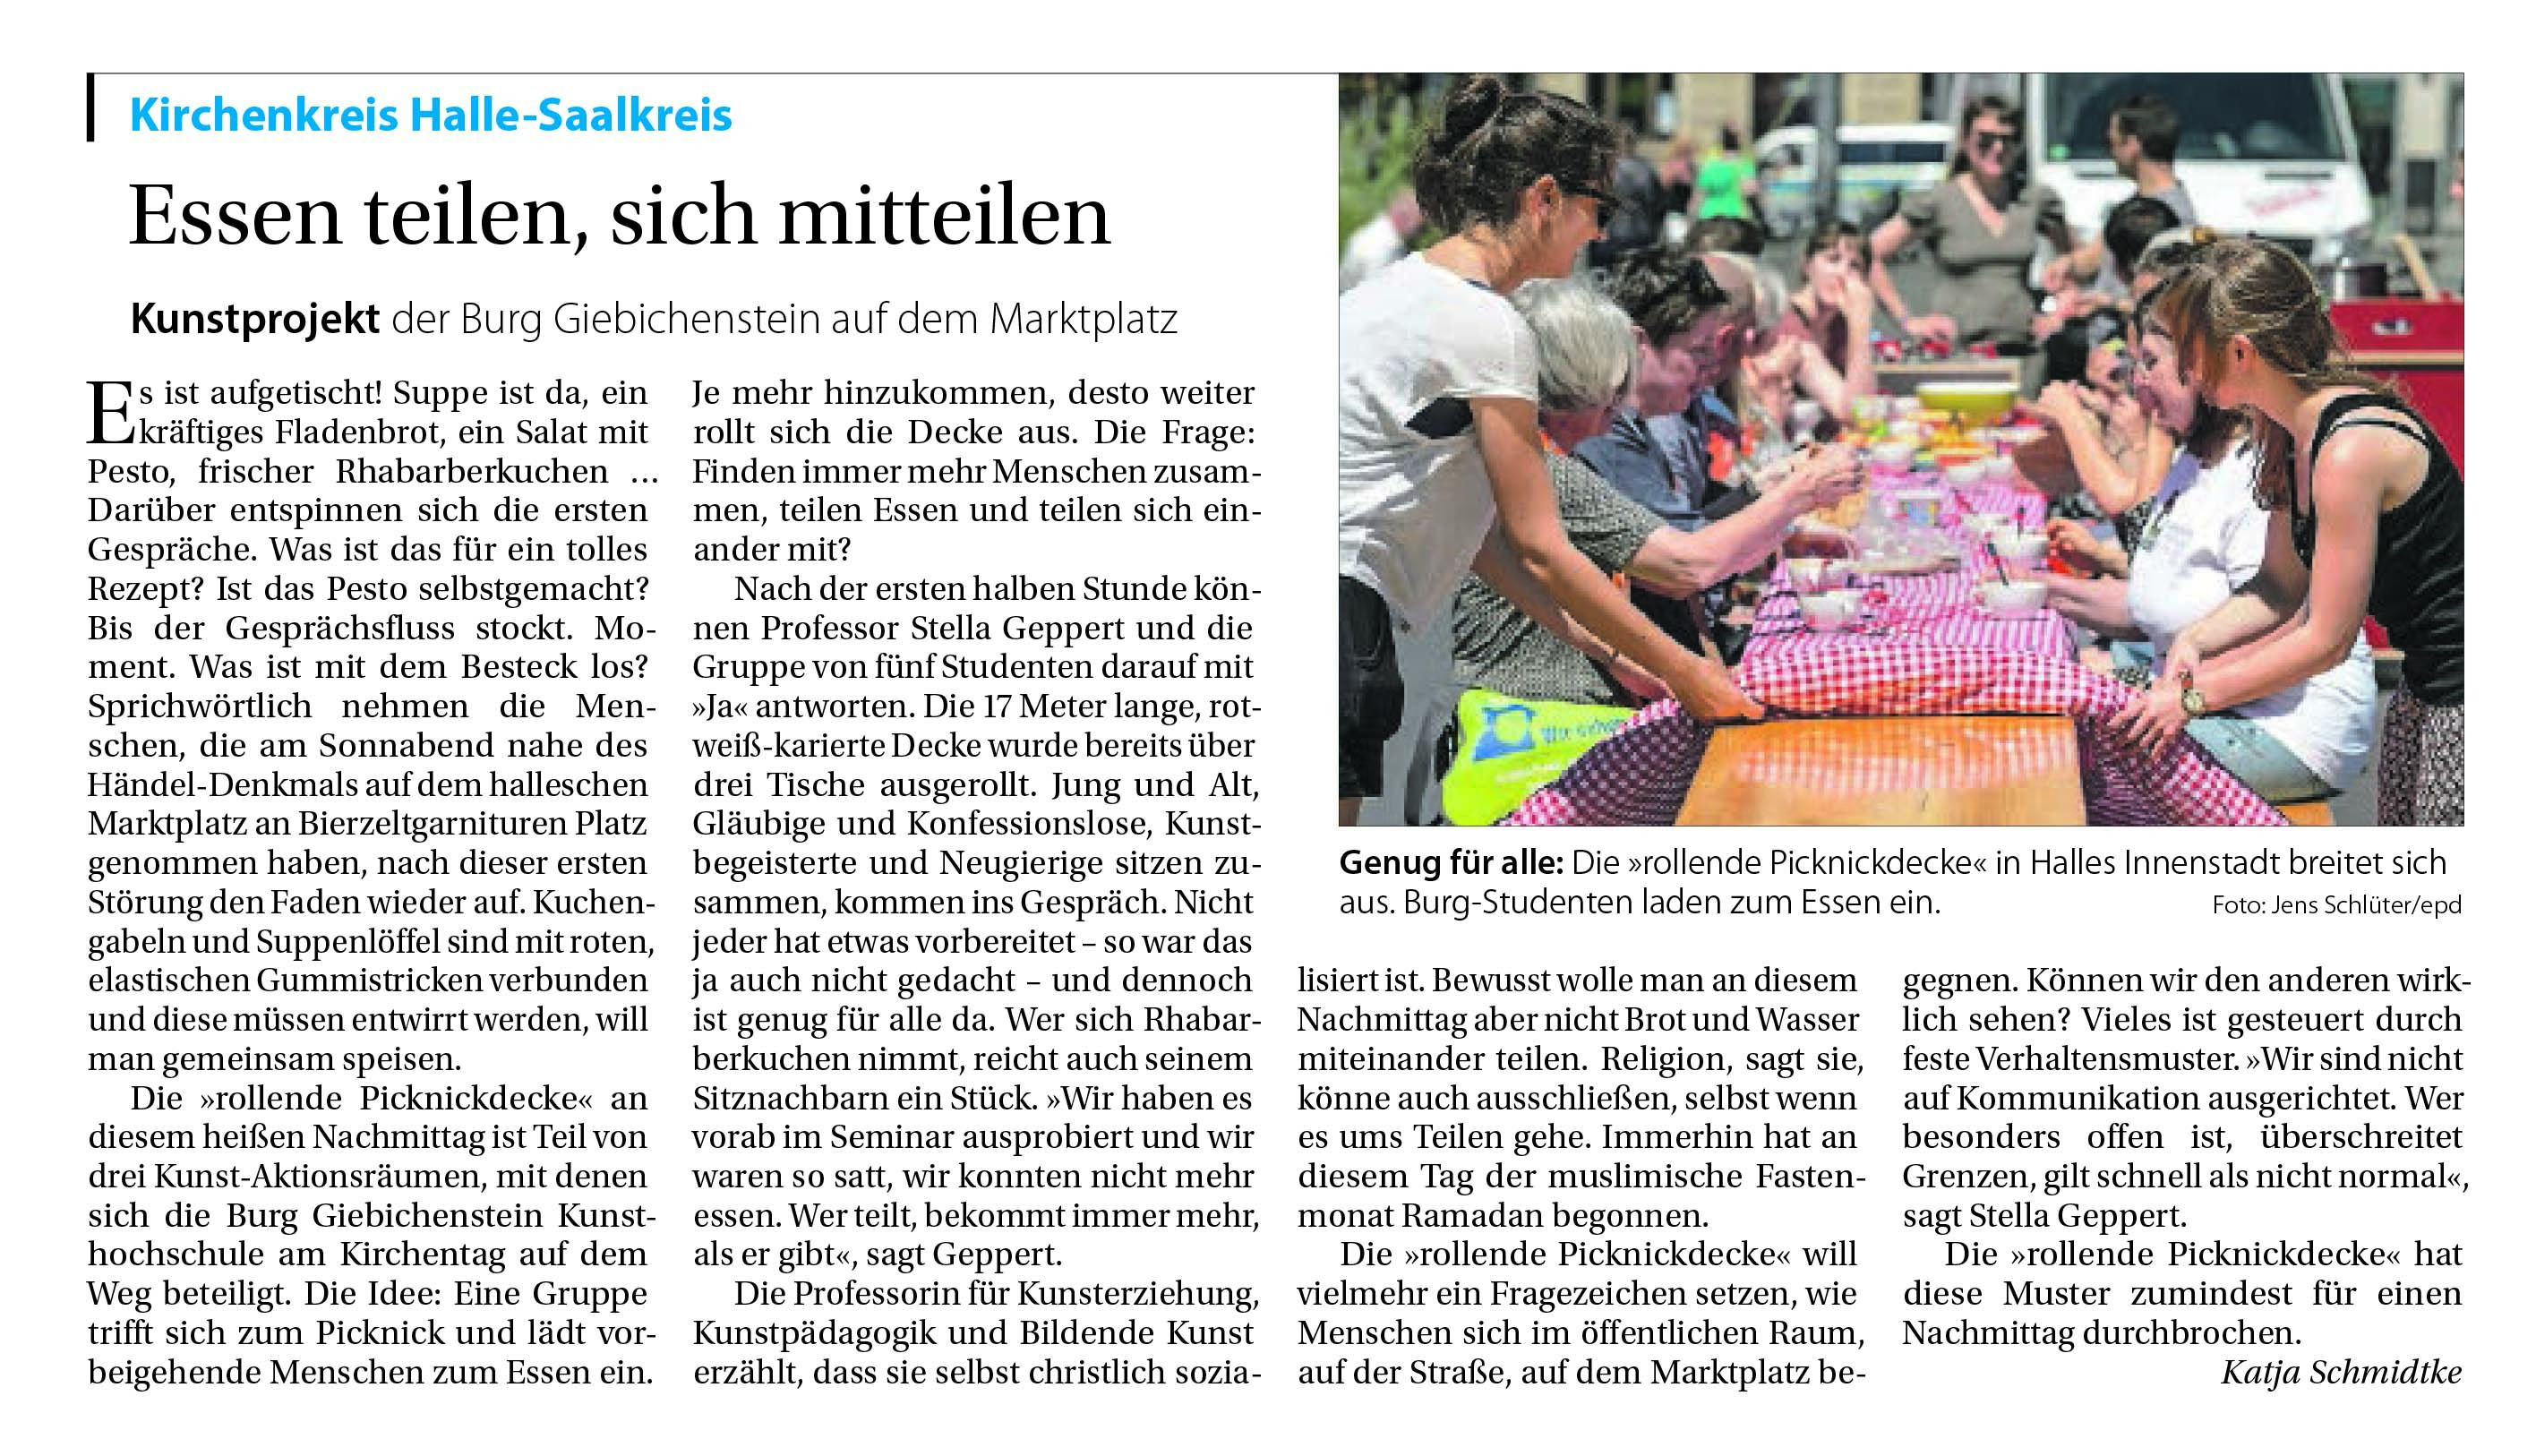 Mitteldeutsche Kirchenzeitung GLAUBE + HEIMAT (Nr. 22 vom 4. Juni 2017, S.8)